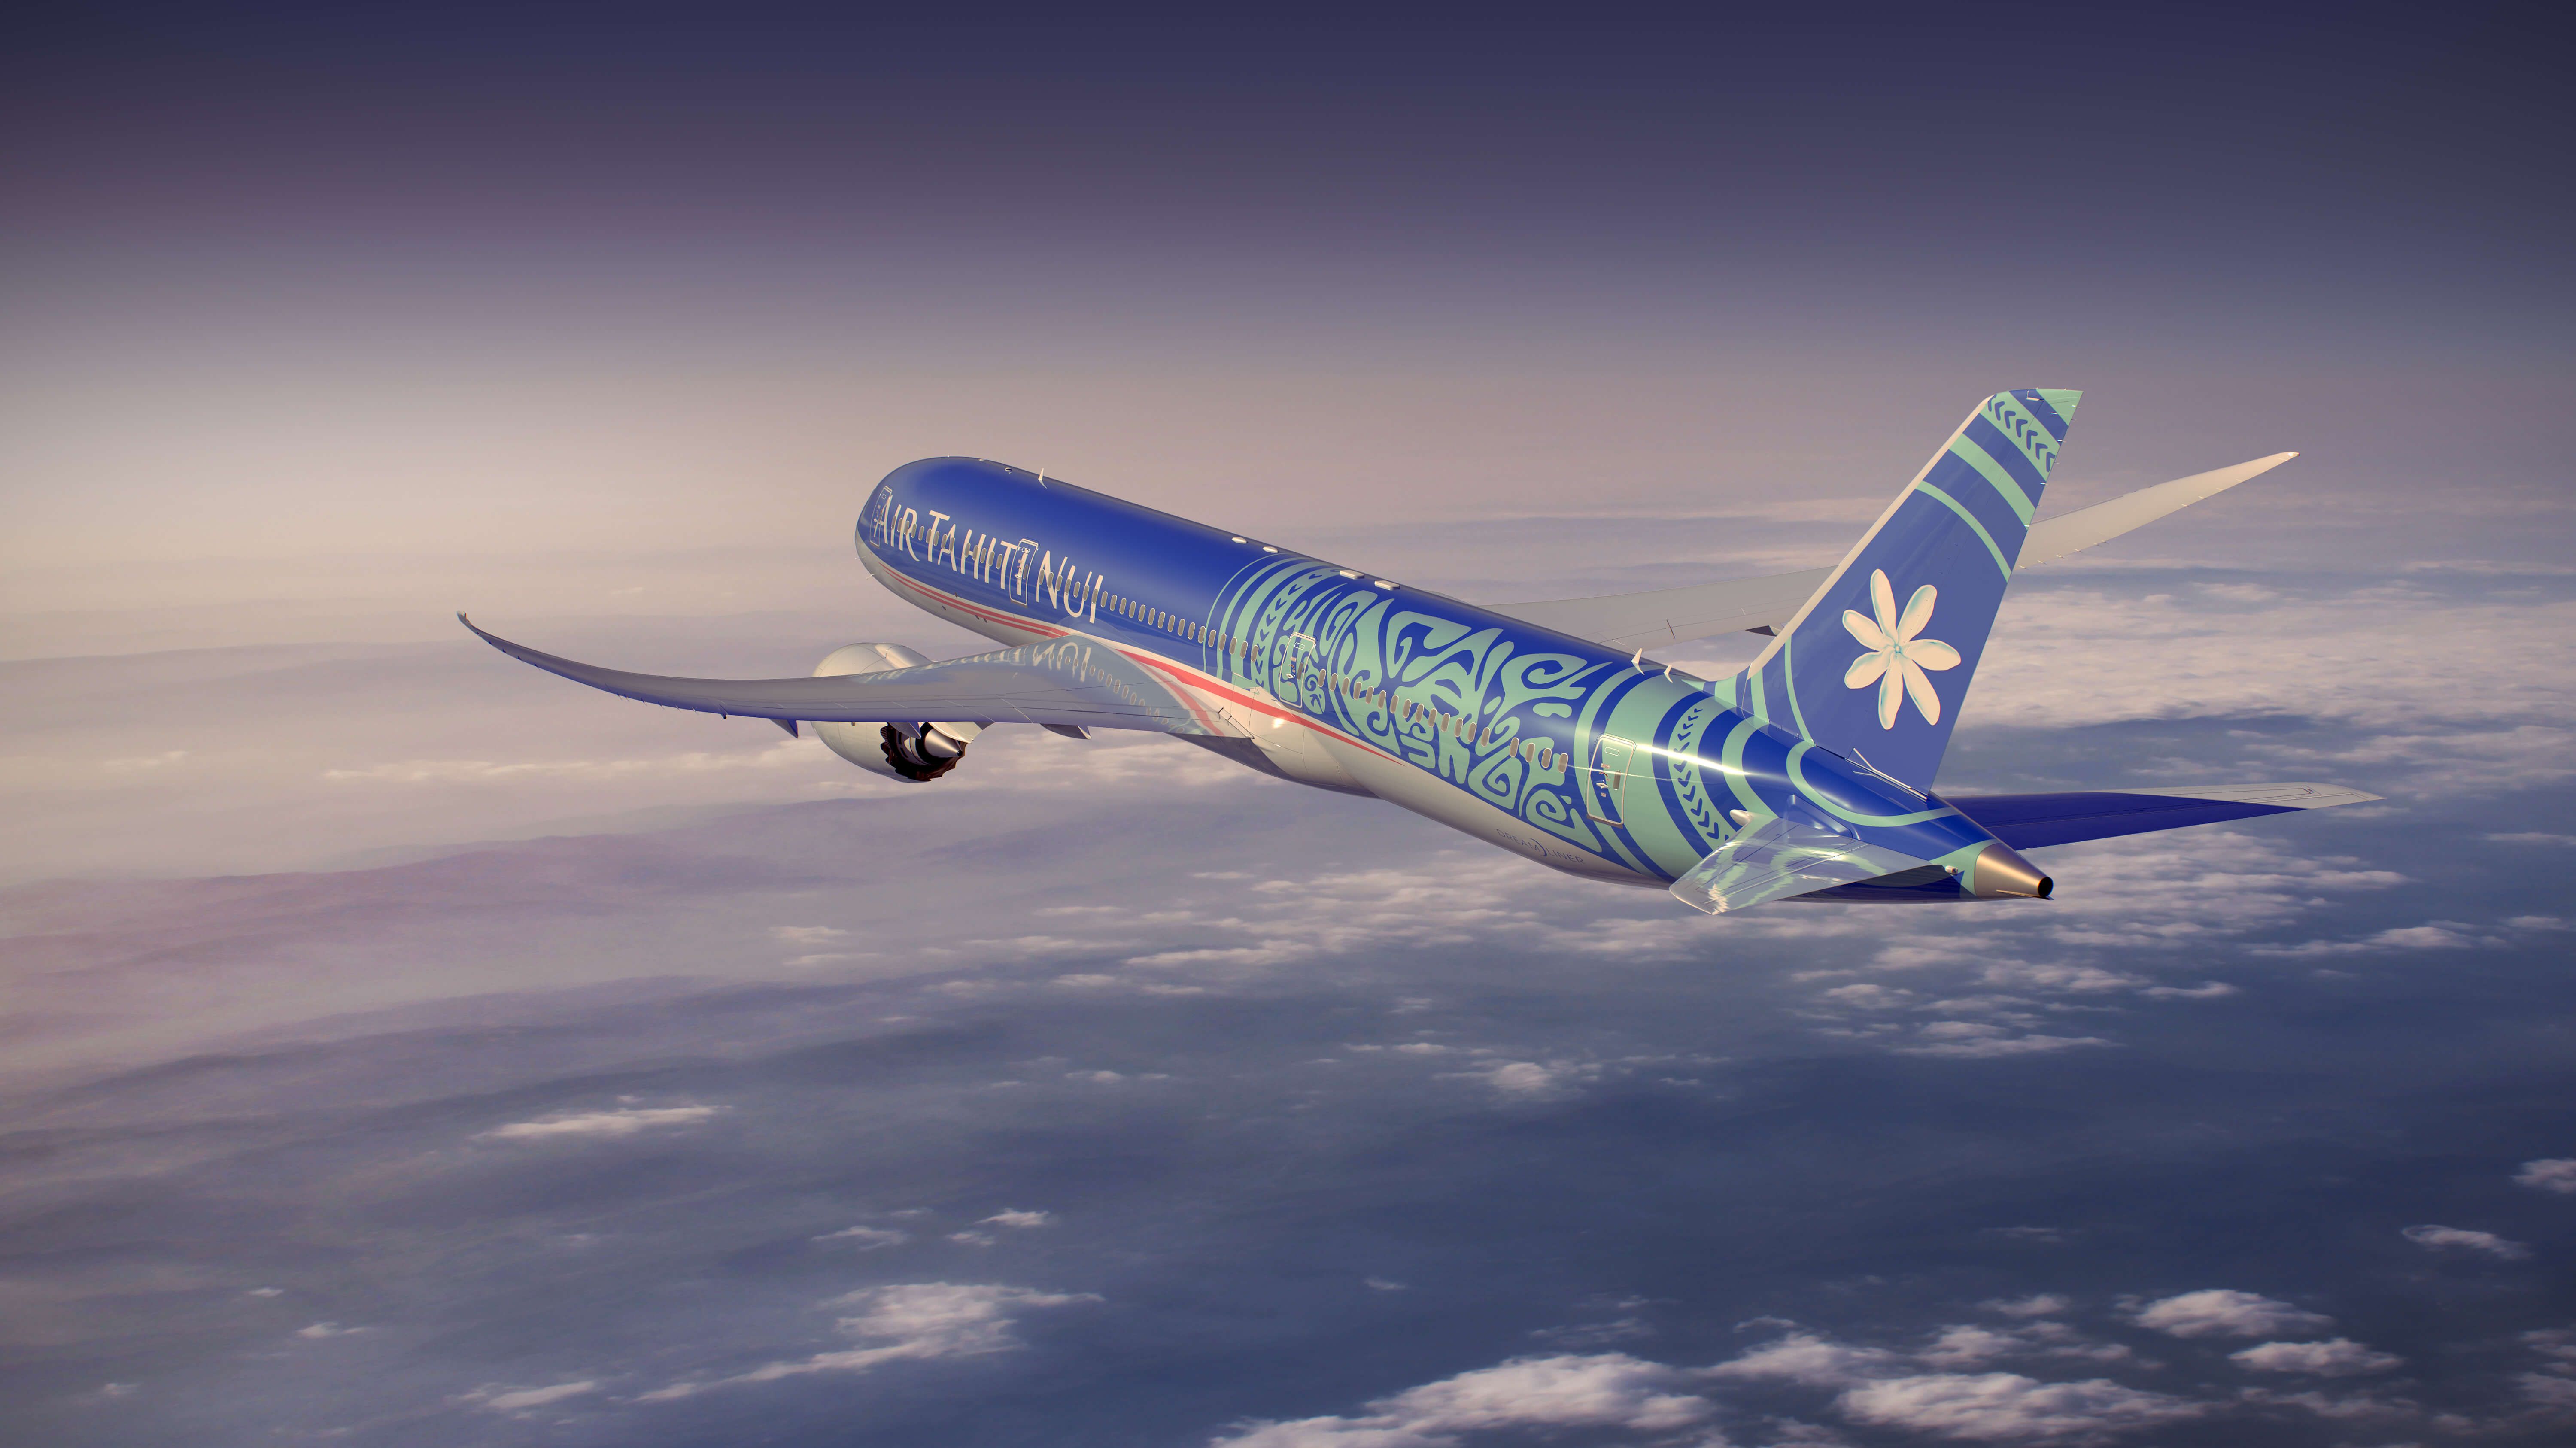 Air Tahiti Nui Dreamliner in the air